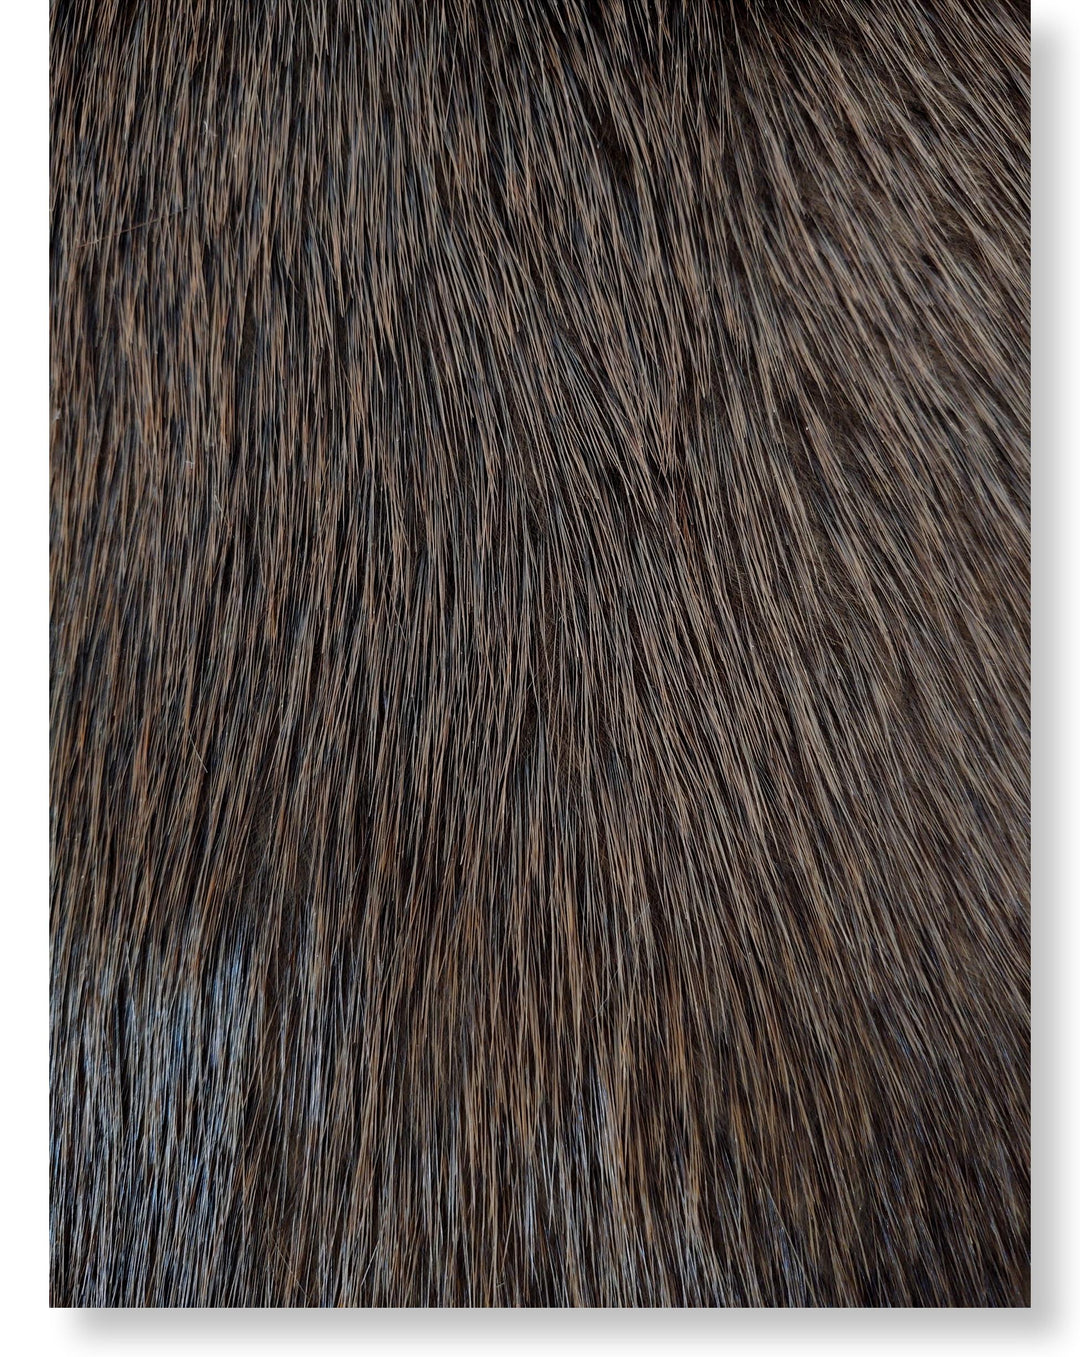 Beaver Brown - Dressed Fur Skin - Fur